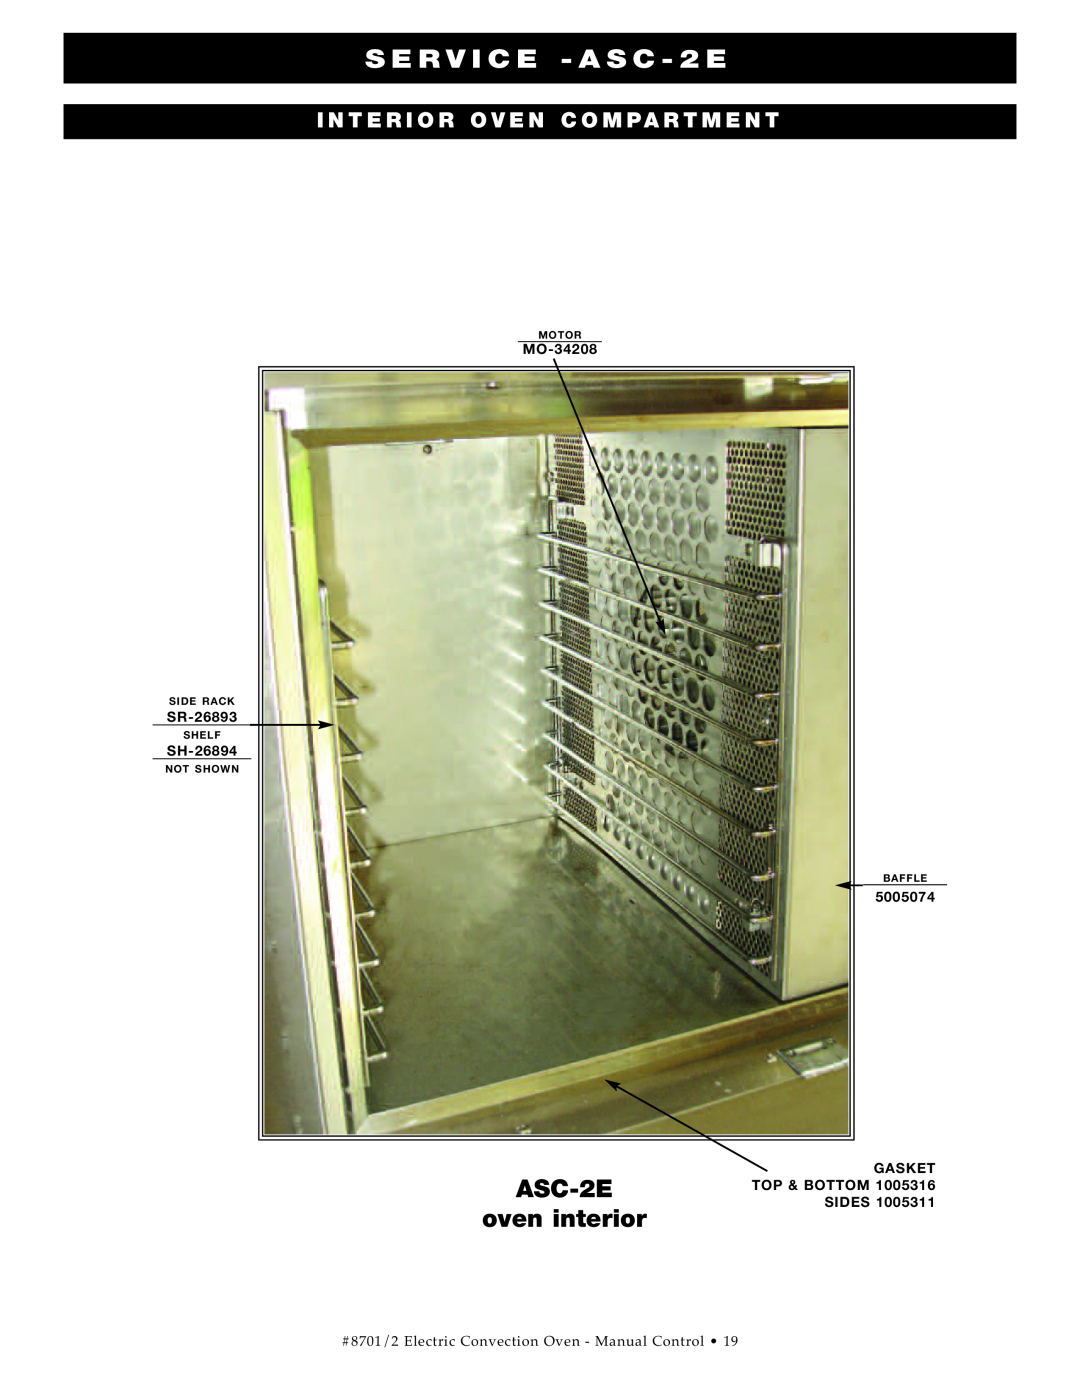 Cisco Systems ASC-4E manual S ERVI CE -ASC-2E, ASC-2E oven interior, Inte Rio R Ove N Comp Art Me Nt 